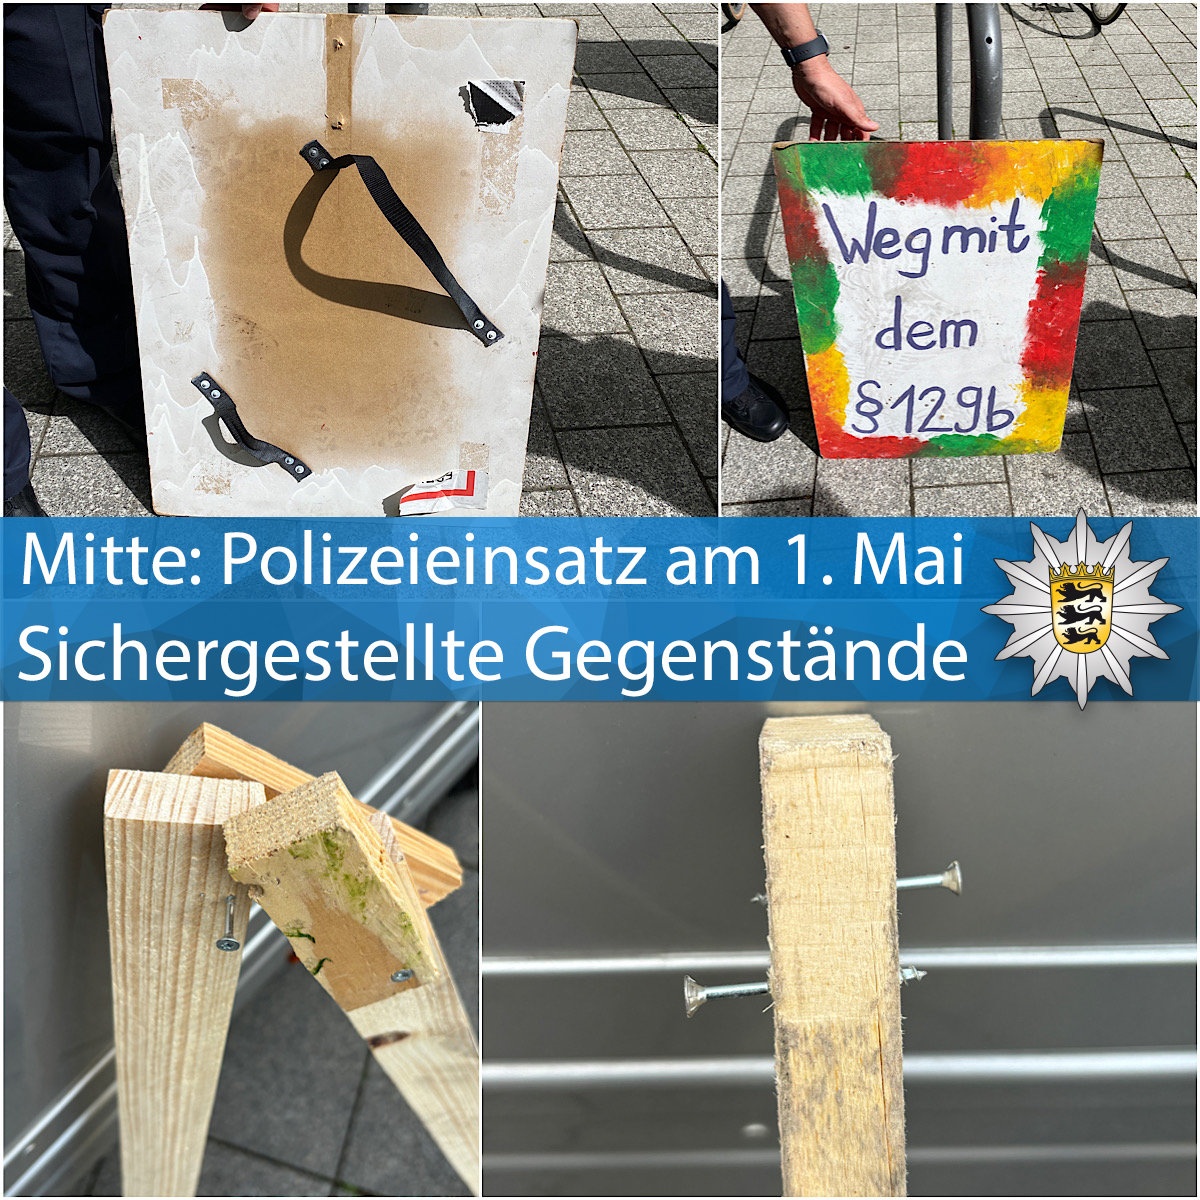 Hunderte Polizisten waren heute wegen mehrerer Versammlungen in #Mitte präsent. Bei der 'Revolutionären 1. Mai Demo' kam es zu Auseinandersetzungen. 167 Personen wurden vorläufig festgenommen & Strafverfahren eingeleitet. Zur PM ▶️t1p.de/d6ewi Eure #Polizei #Stuttgart